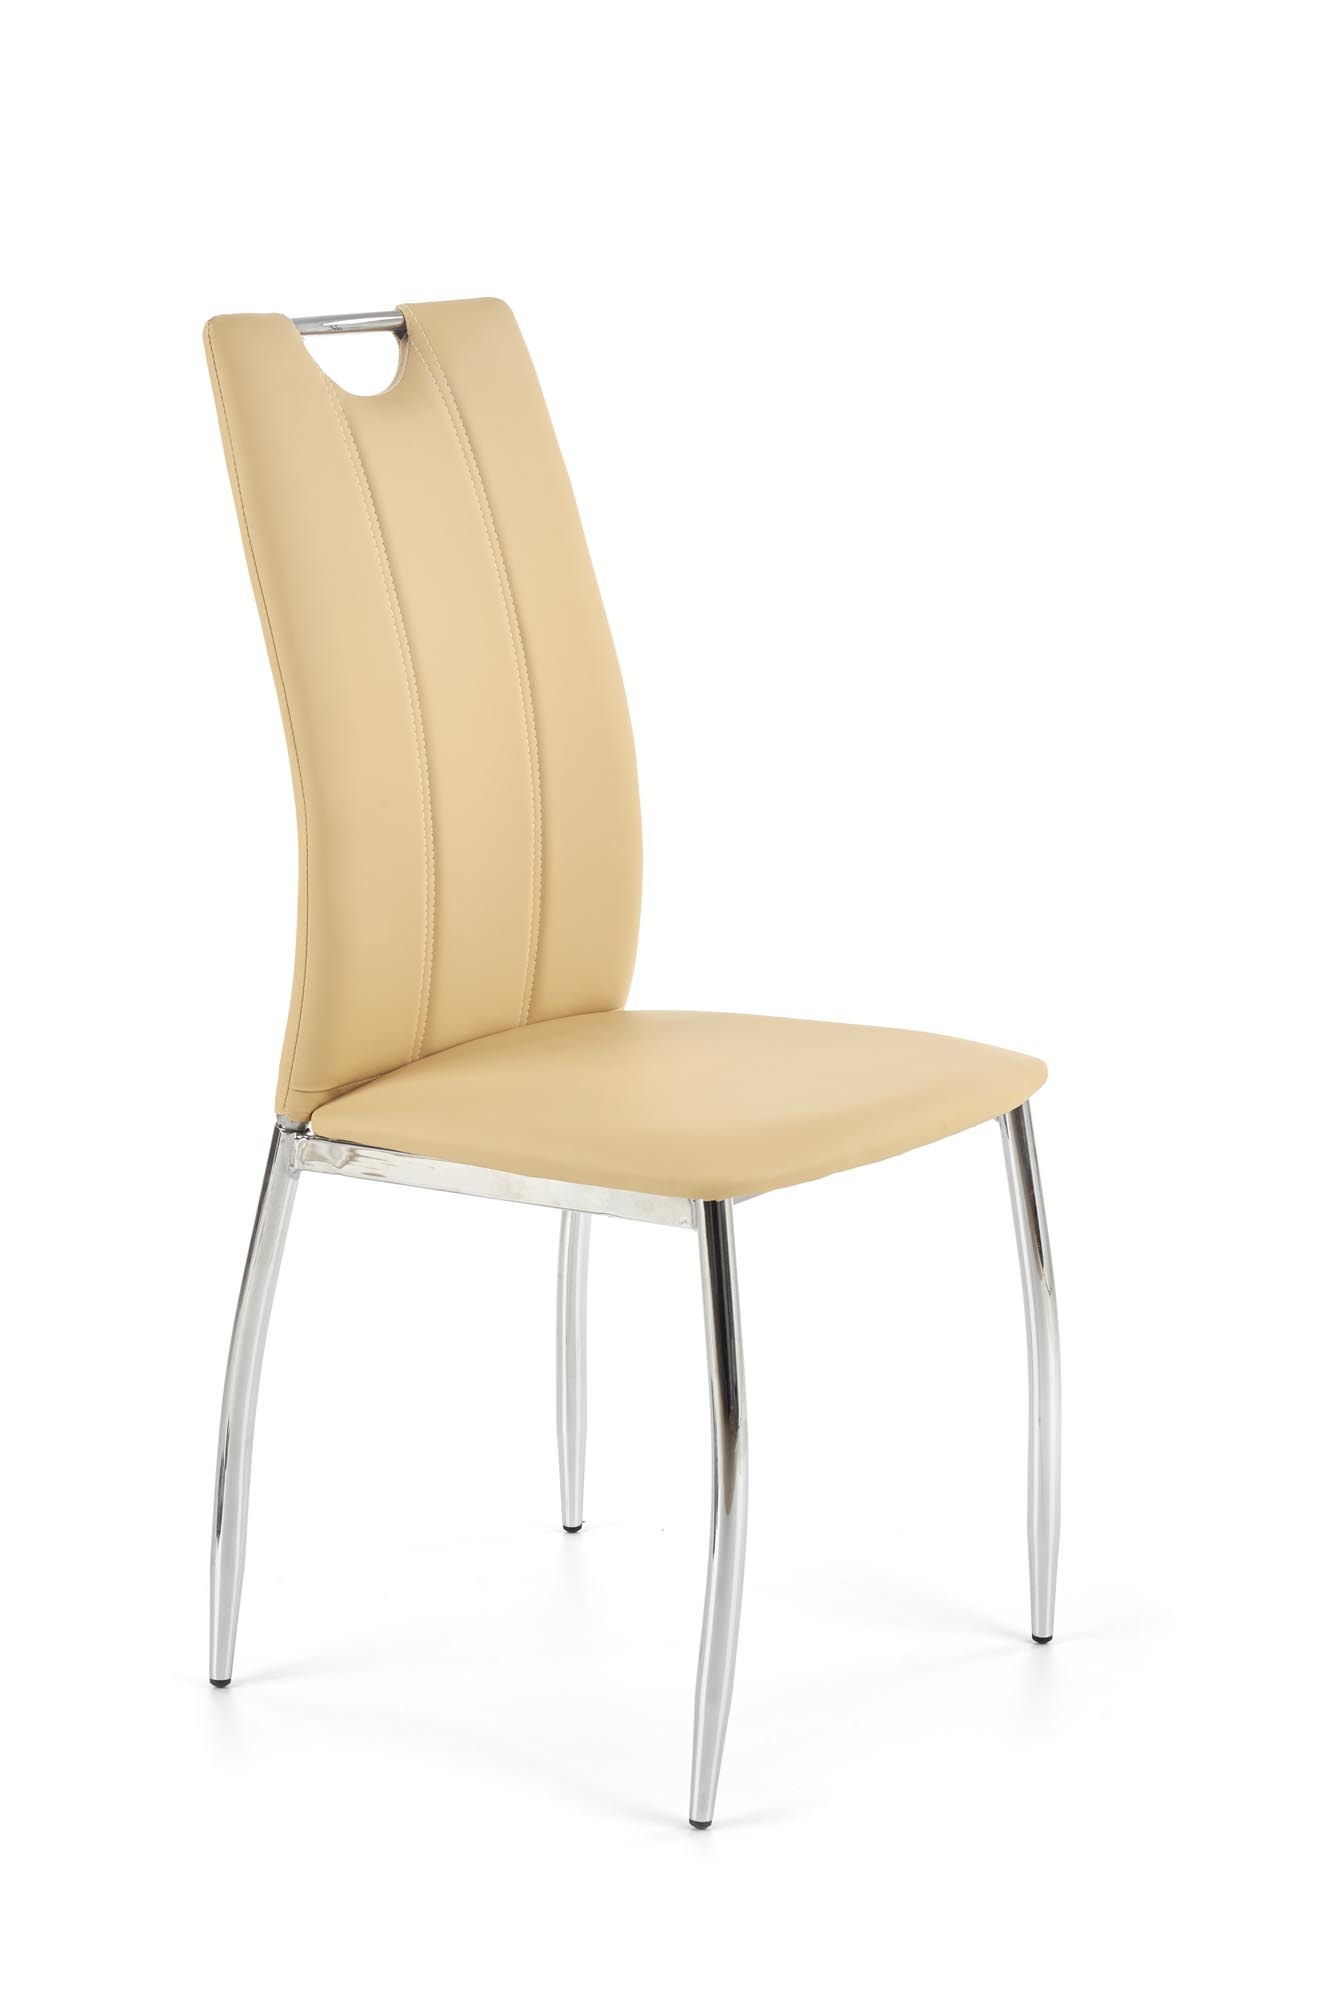 K187 krzesło beżowy